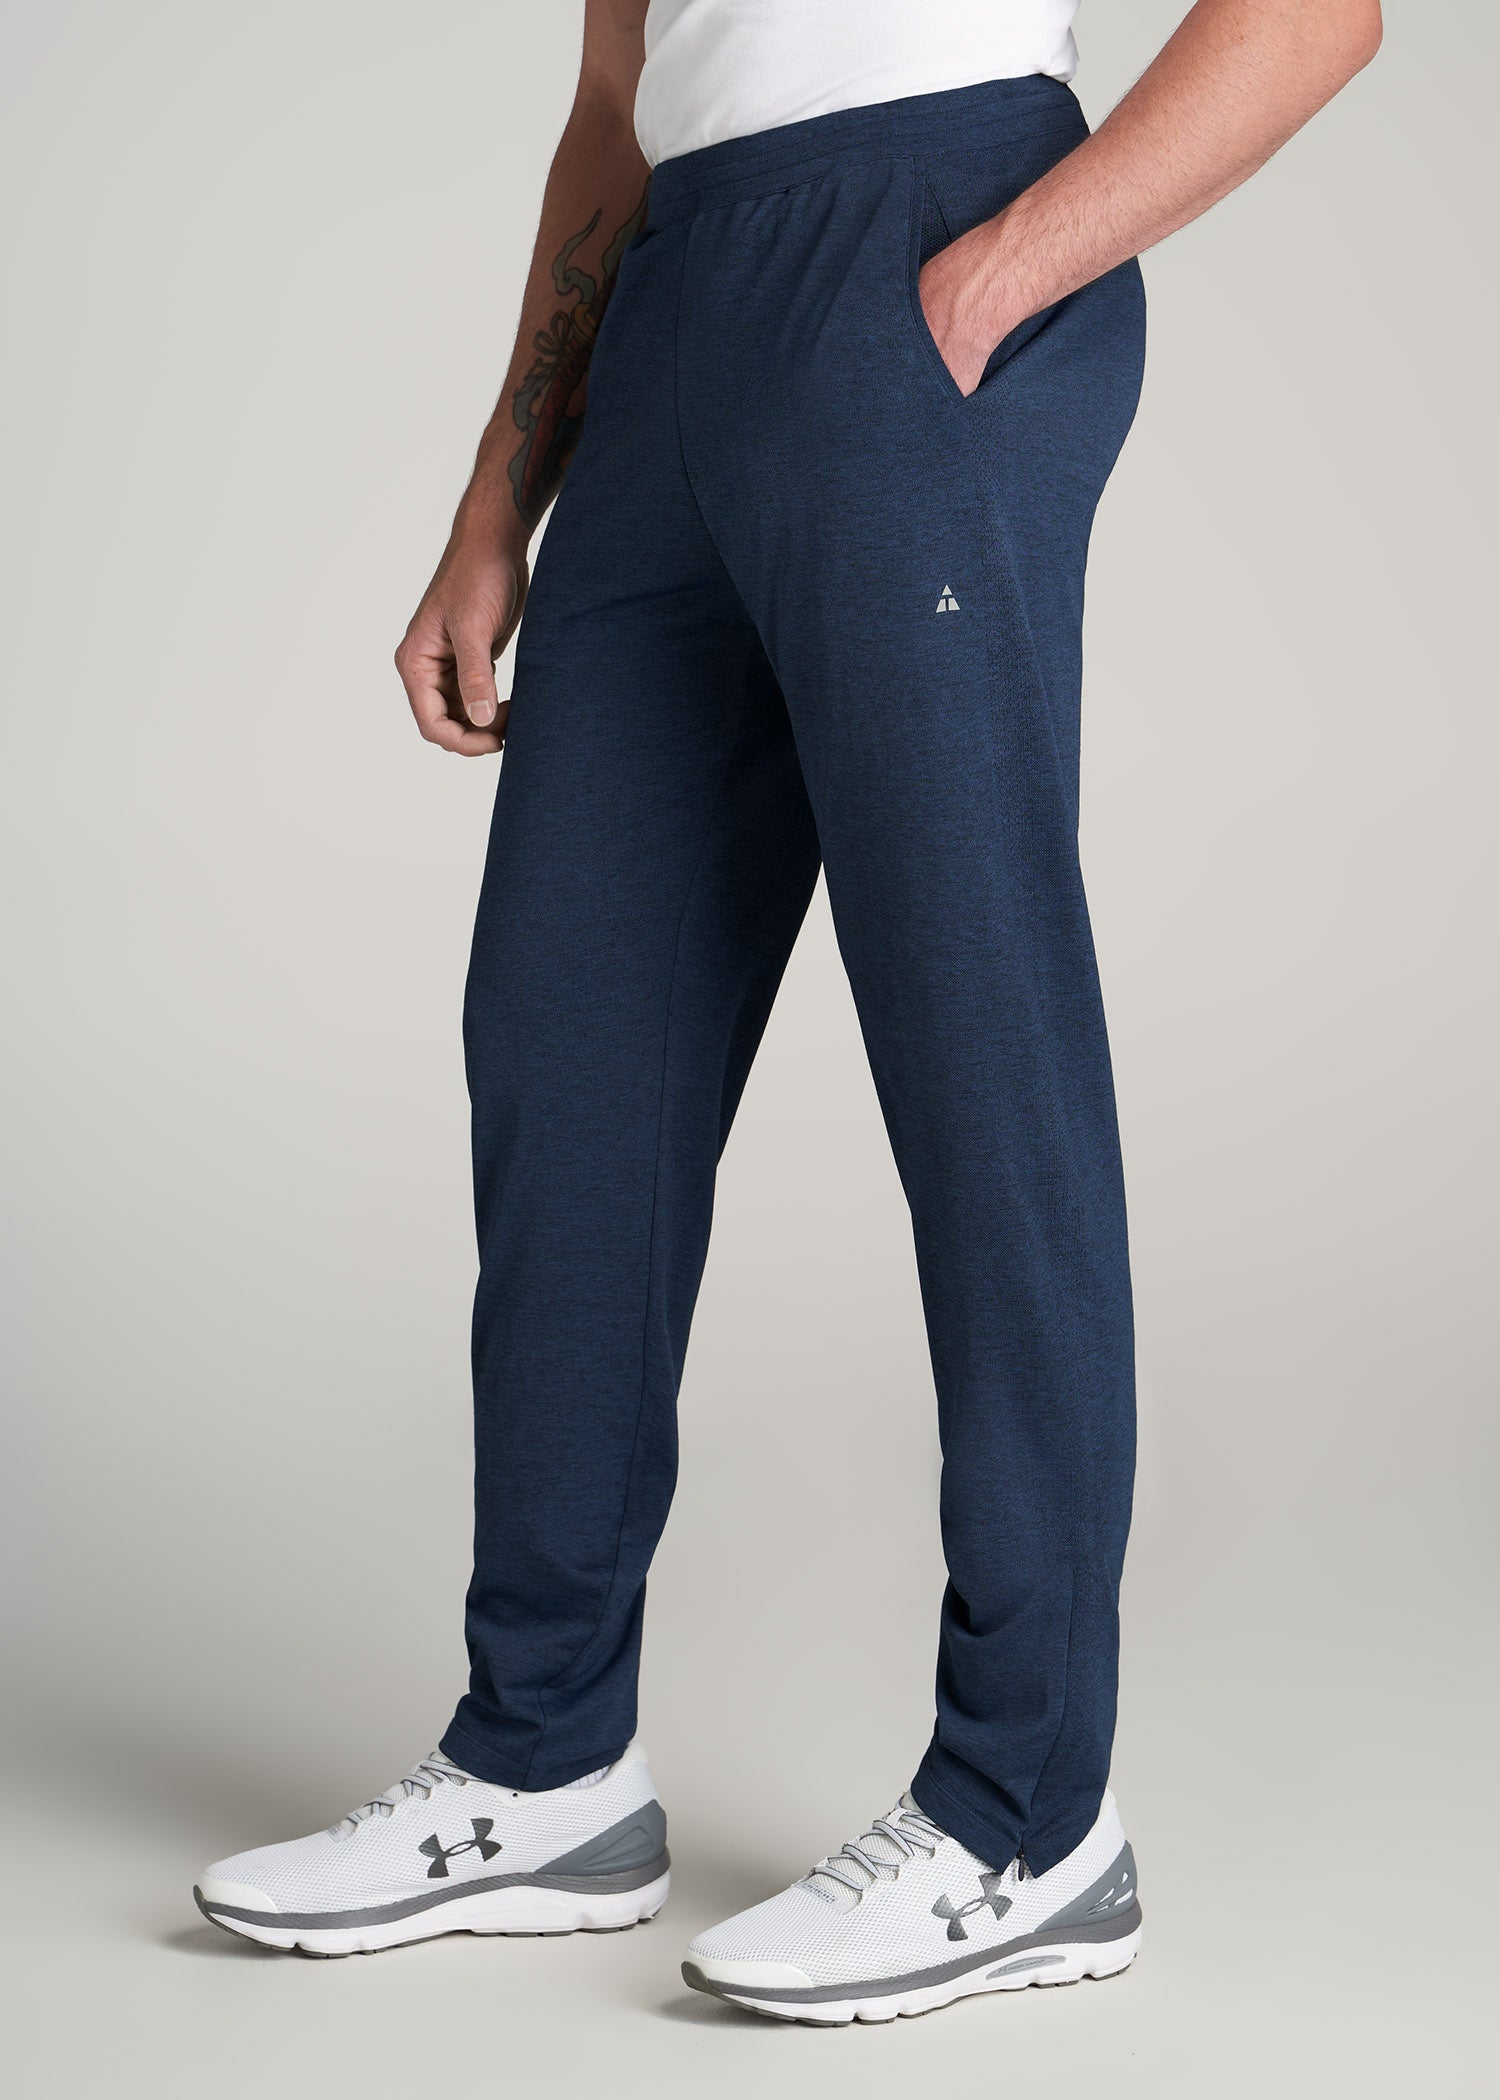 Men's Utah Jazz Concepts Sport Navy Trackside Fleece Cuffed Pants